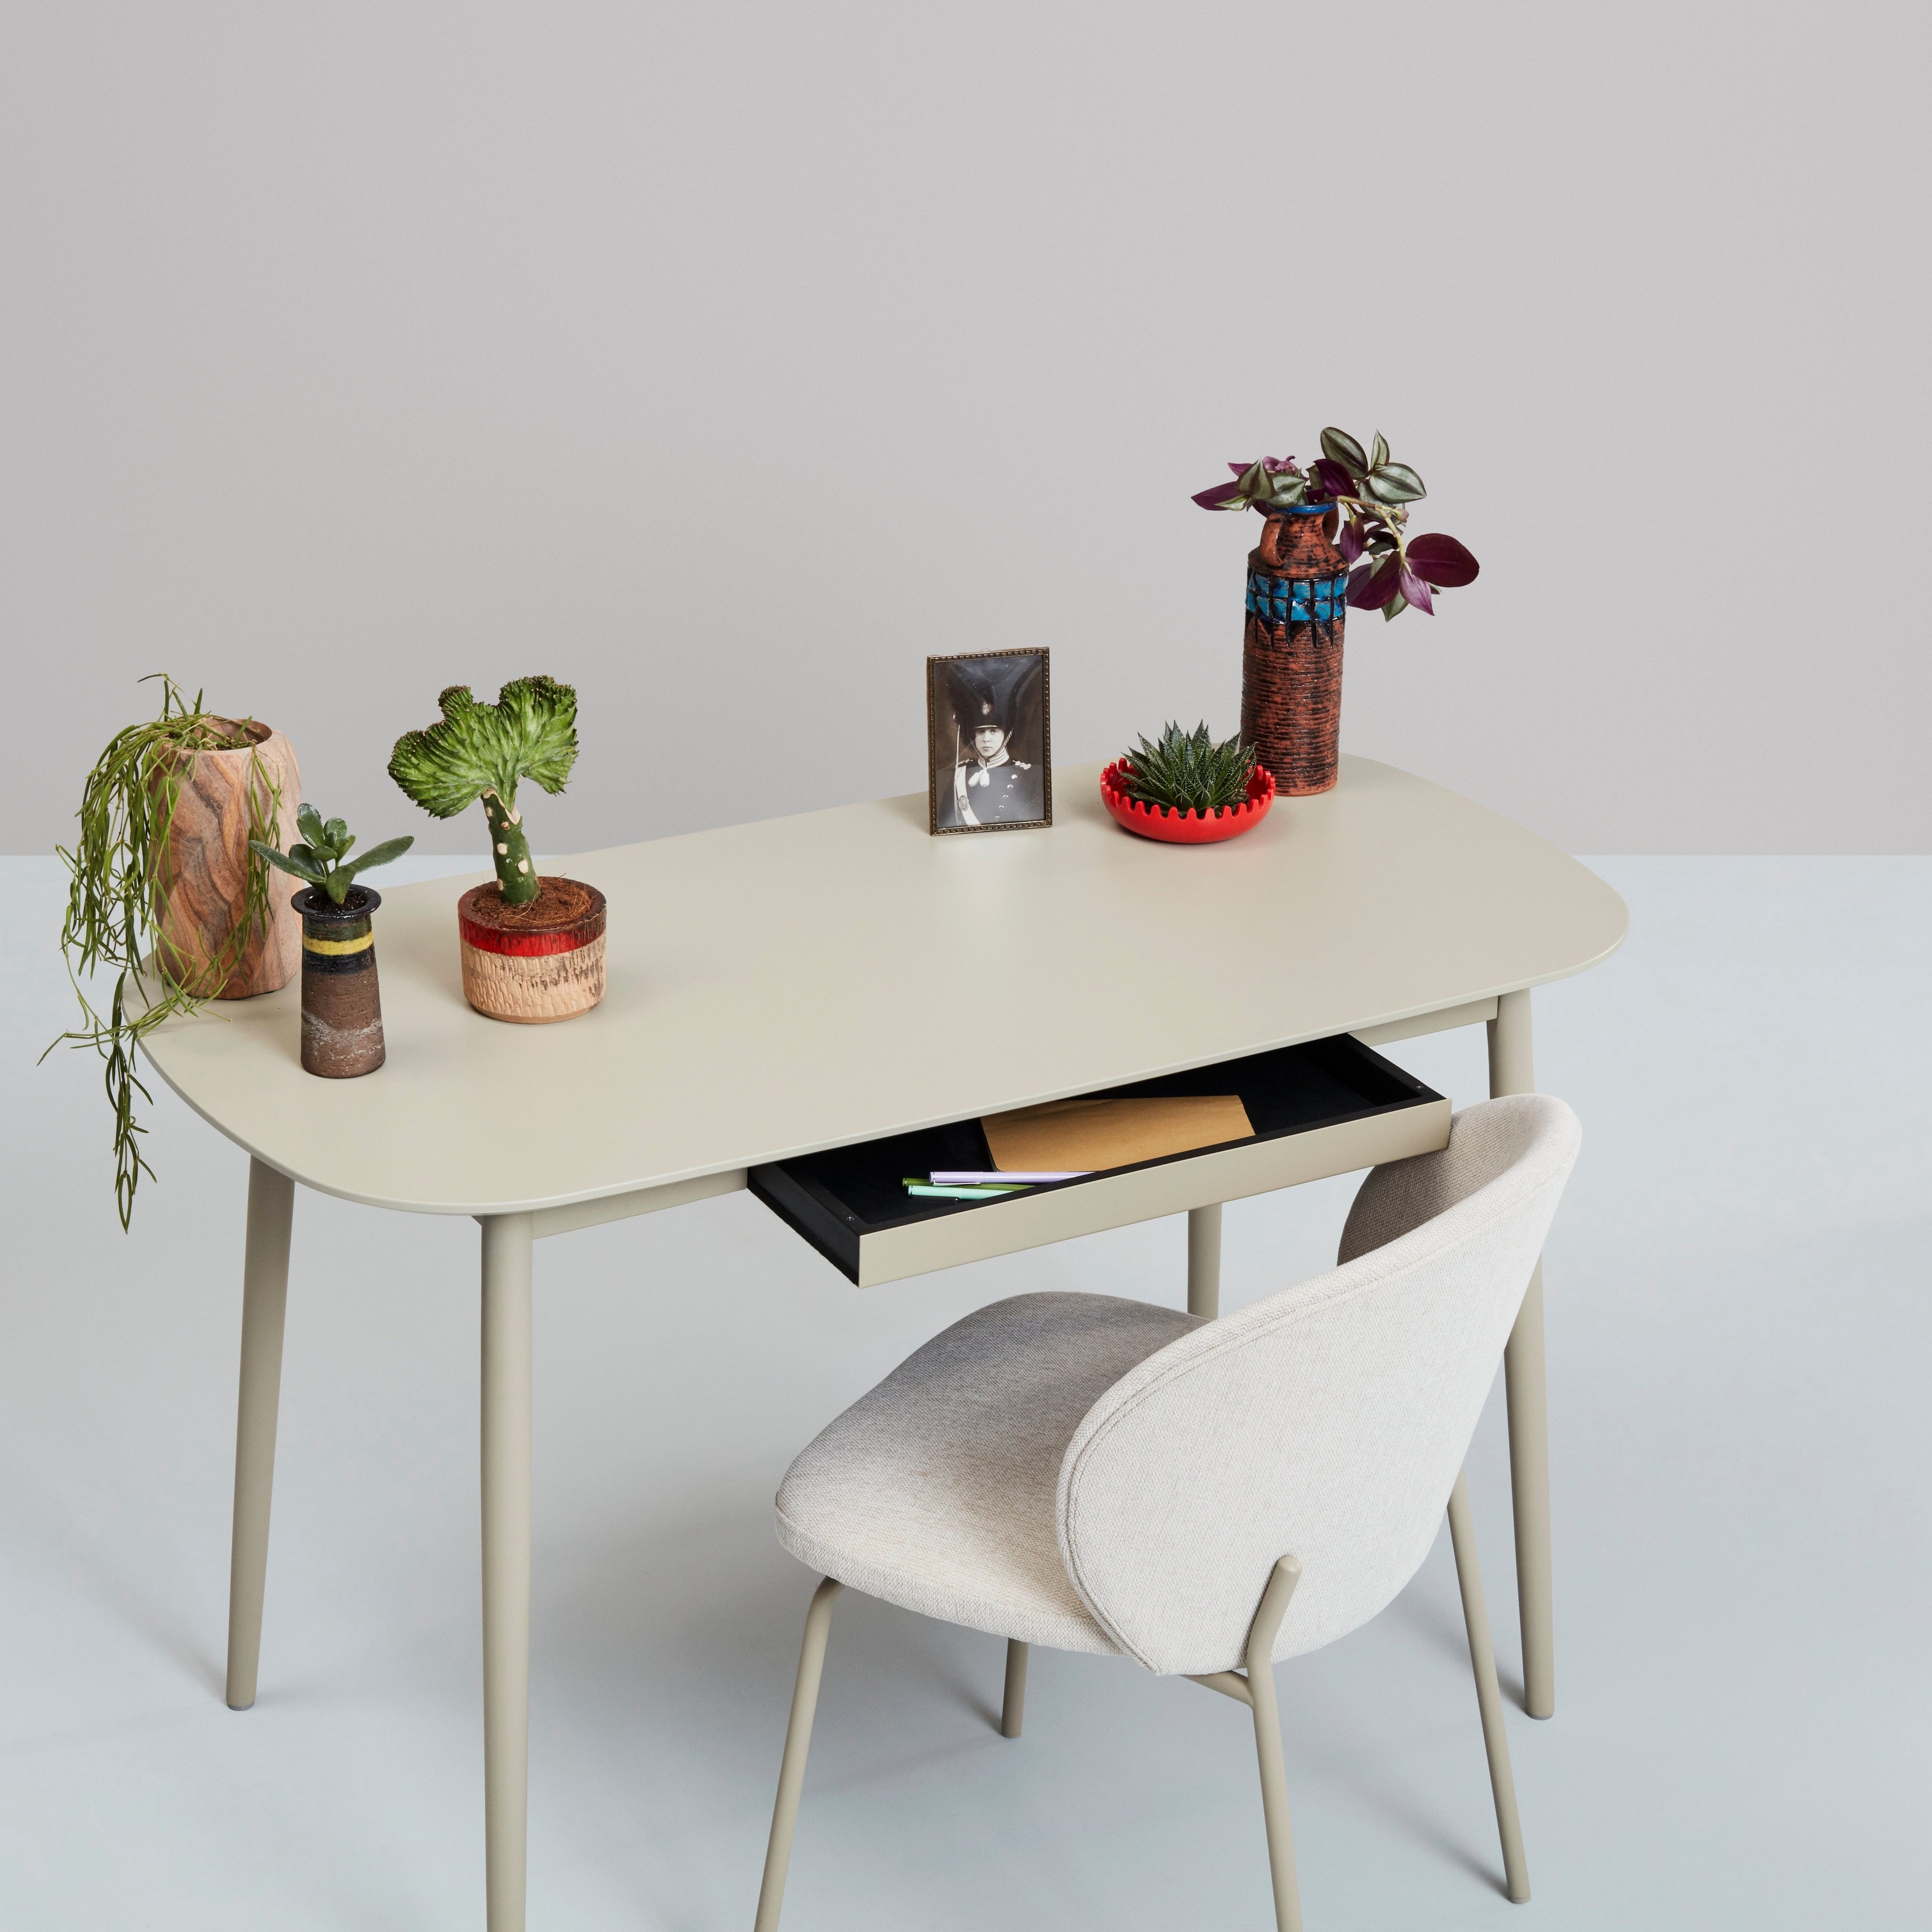 Fehér íróasztal növényekkel, dekoratív tárgyakkal és székkel semleges háttér előtt.